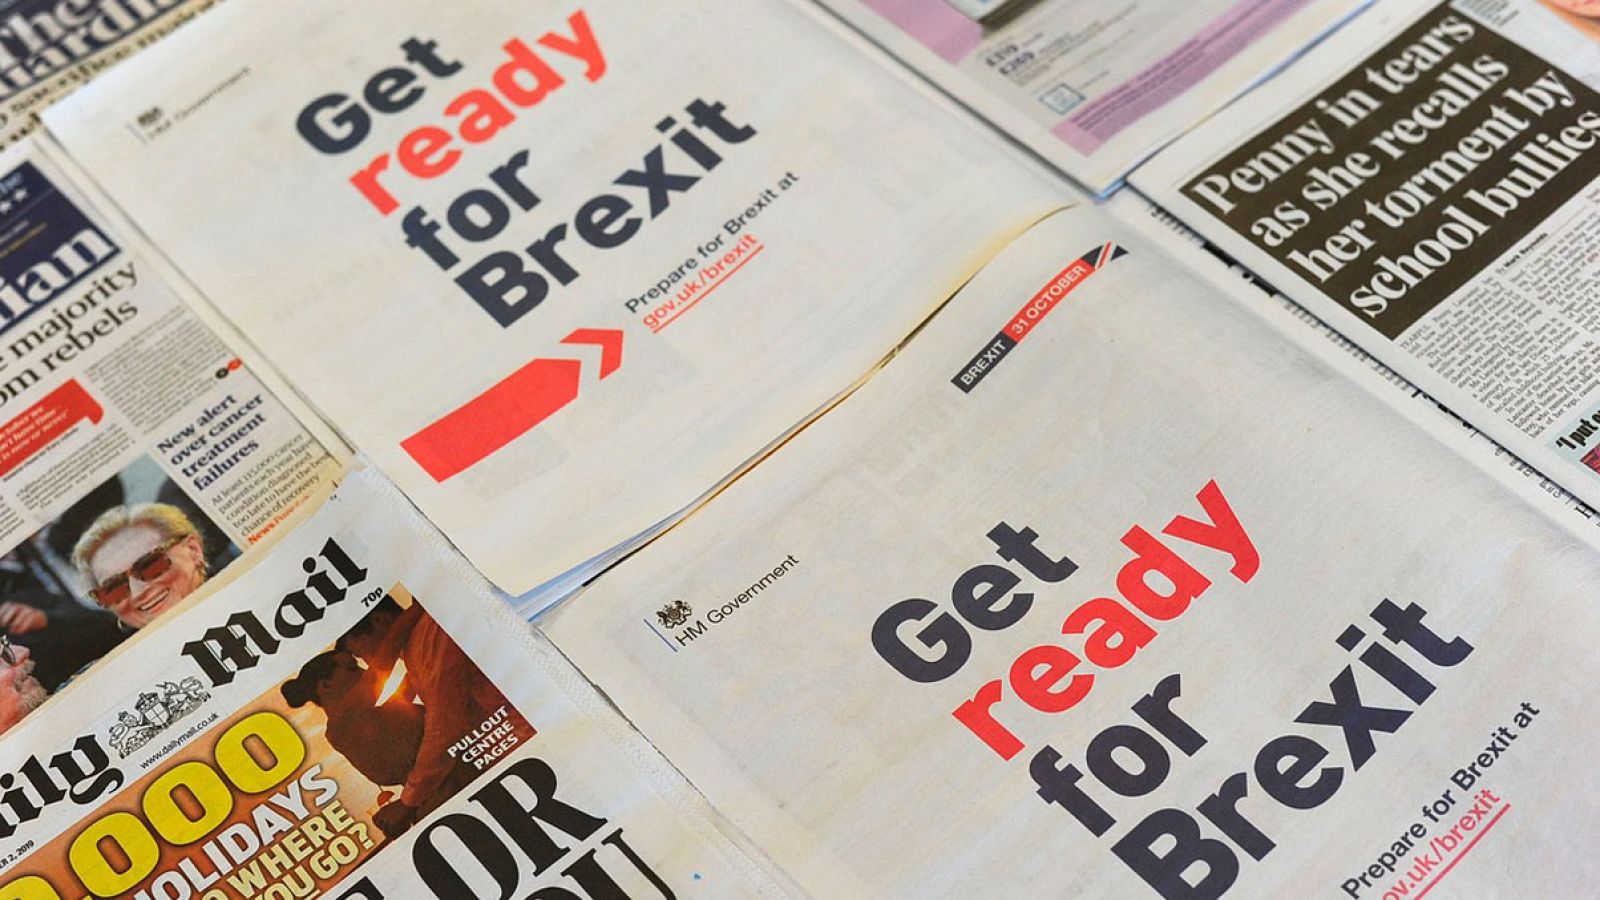 Imagen de la campaña del gobierno británico para "prepararse para el 'Brexit'" en la prensa. Foto: DANIEL SORABJI / AFP